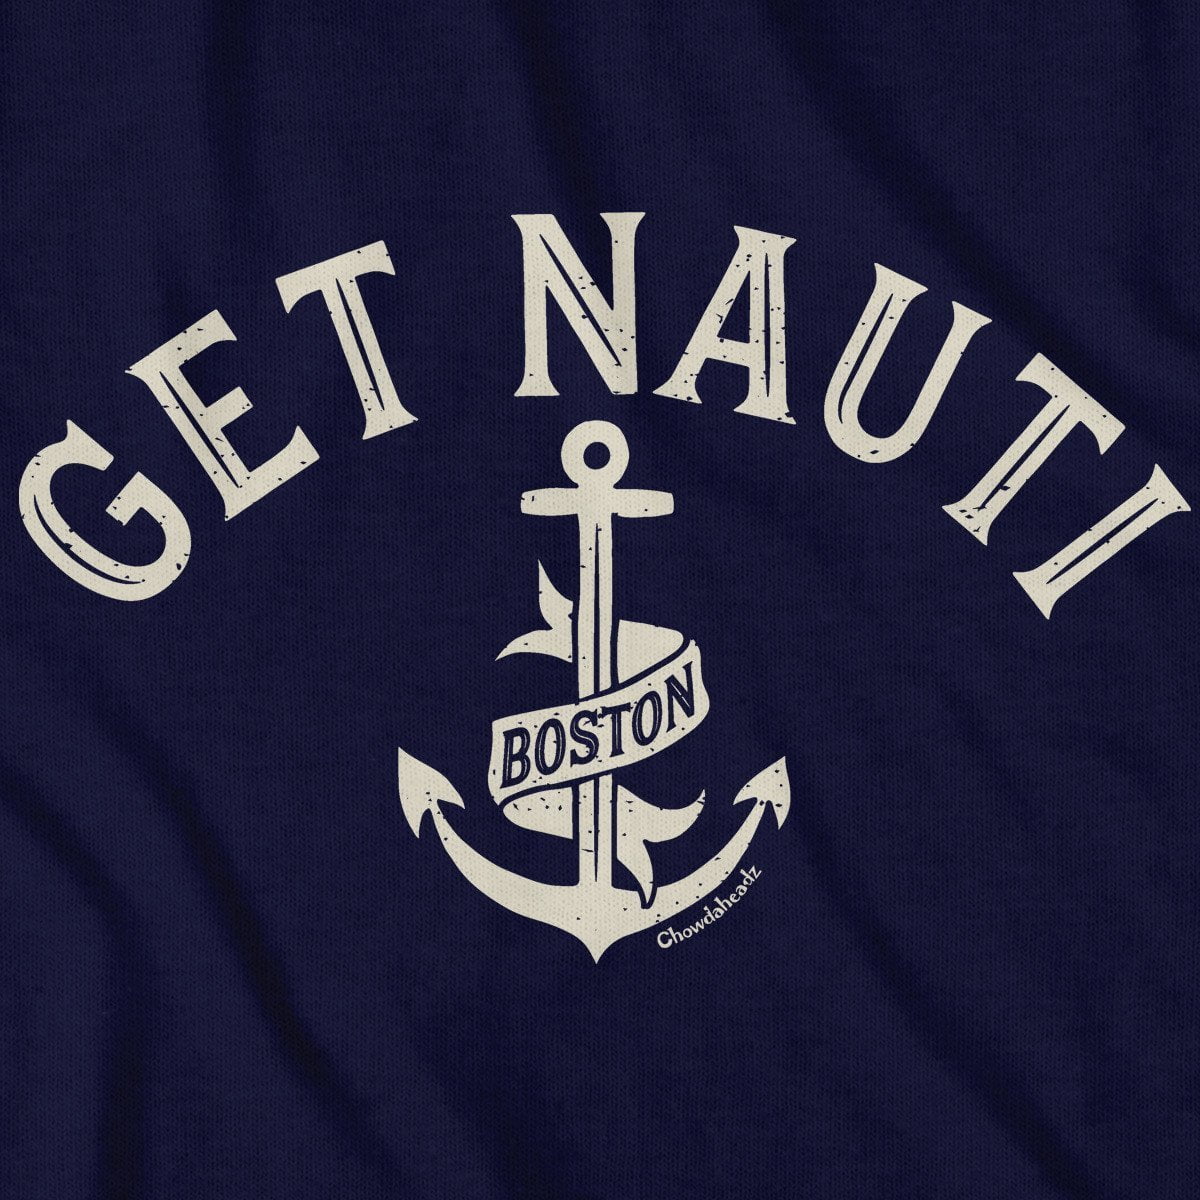 Get Nauti Boston T-Shirt - Chowdaheadz